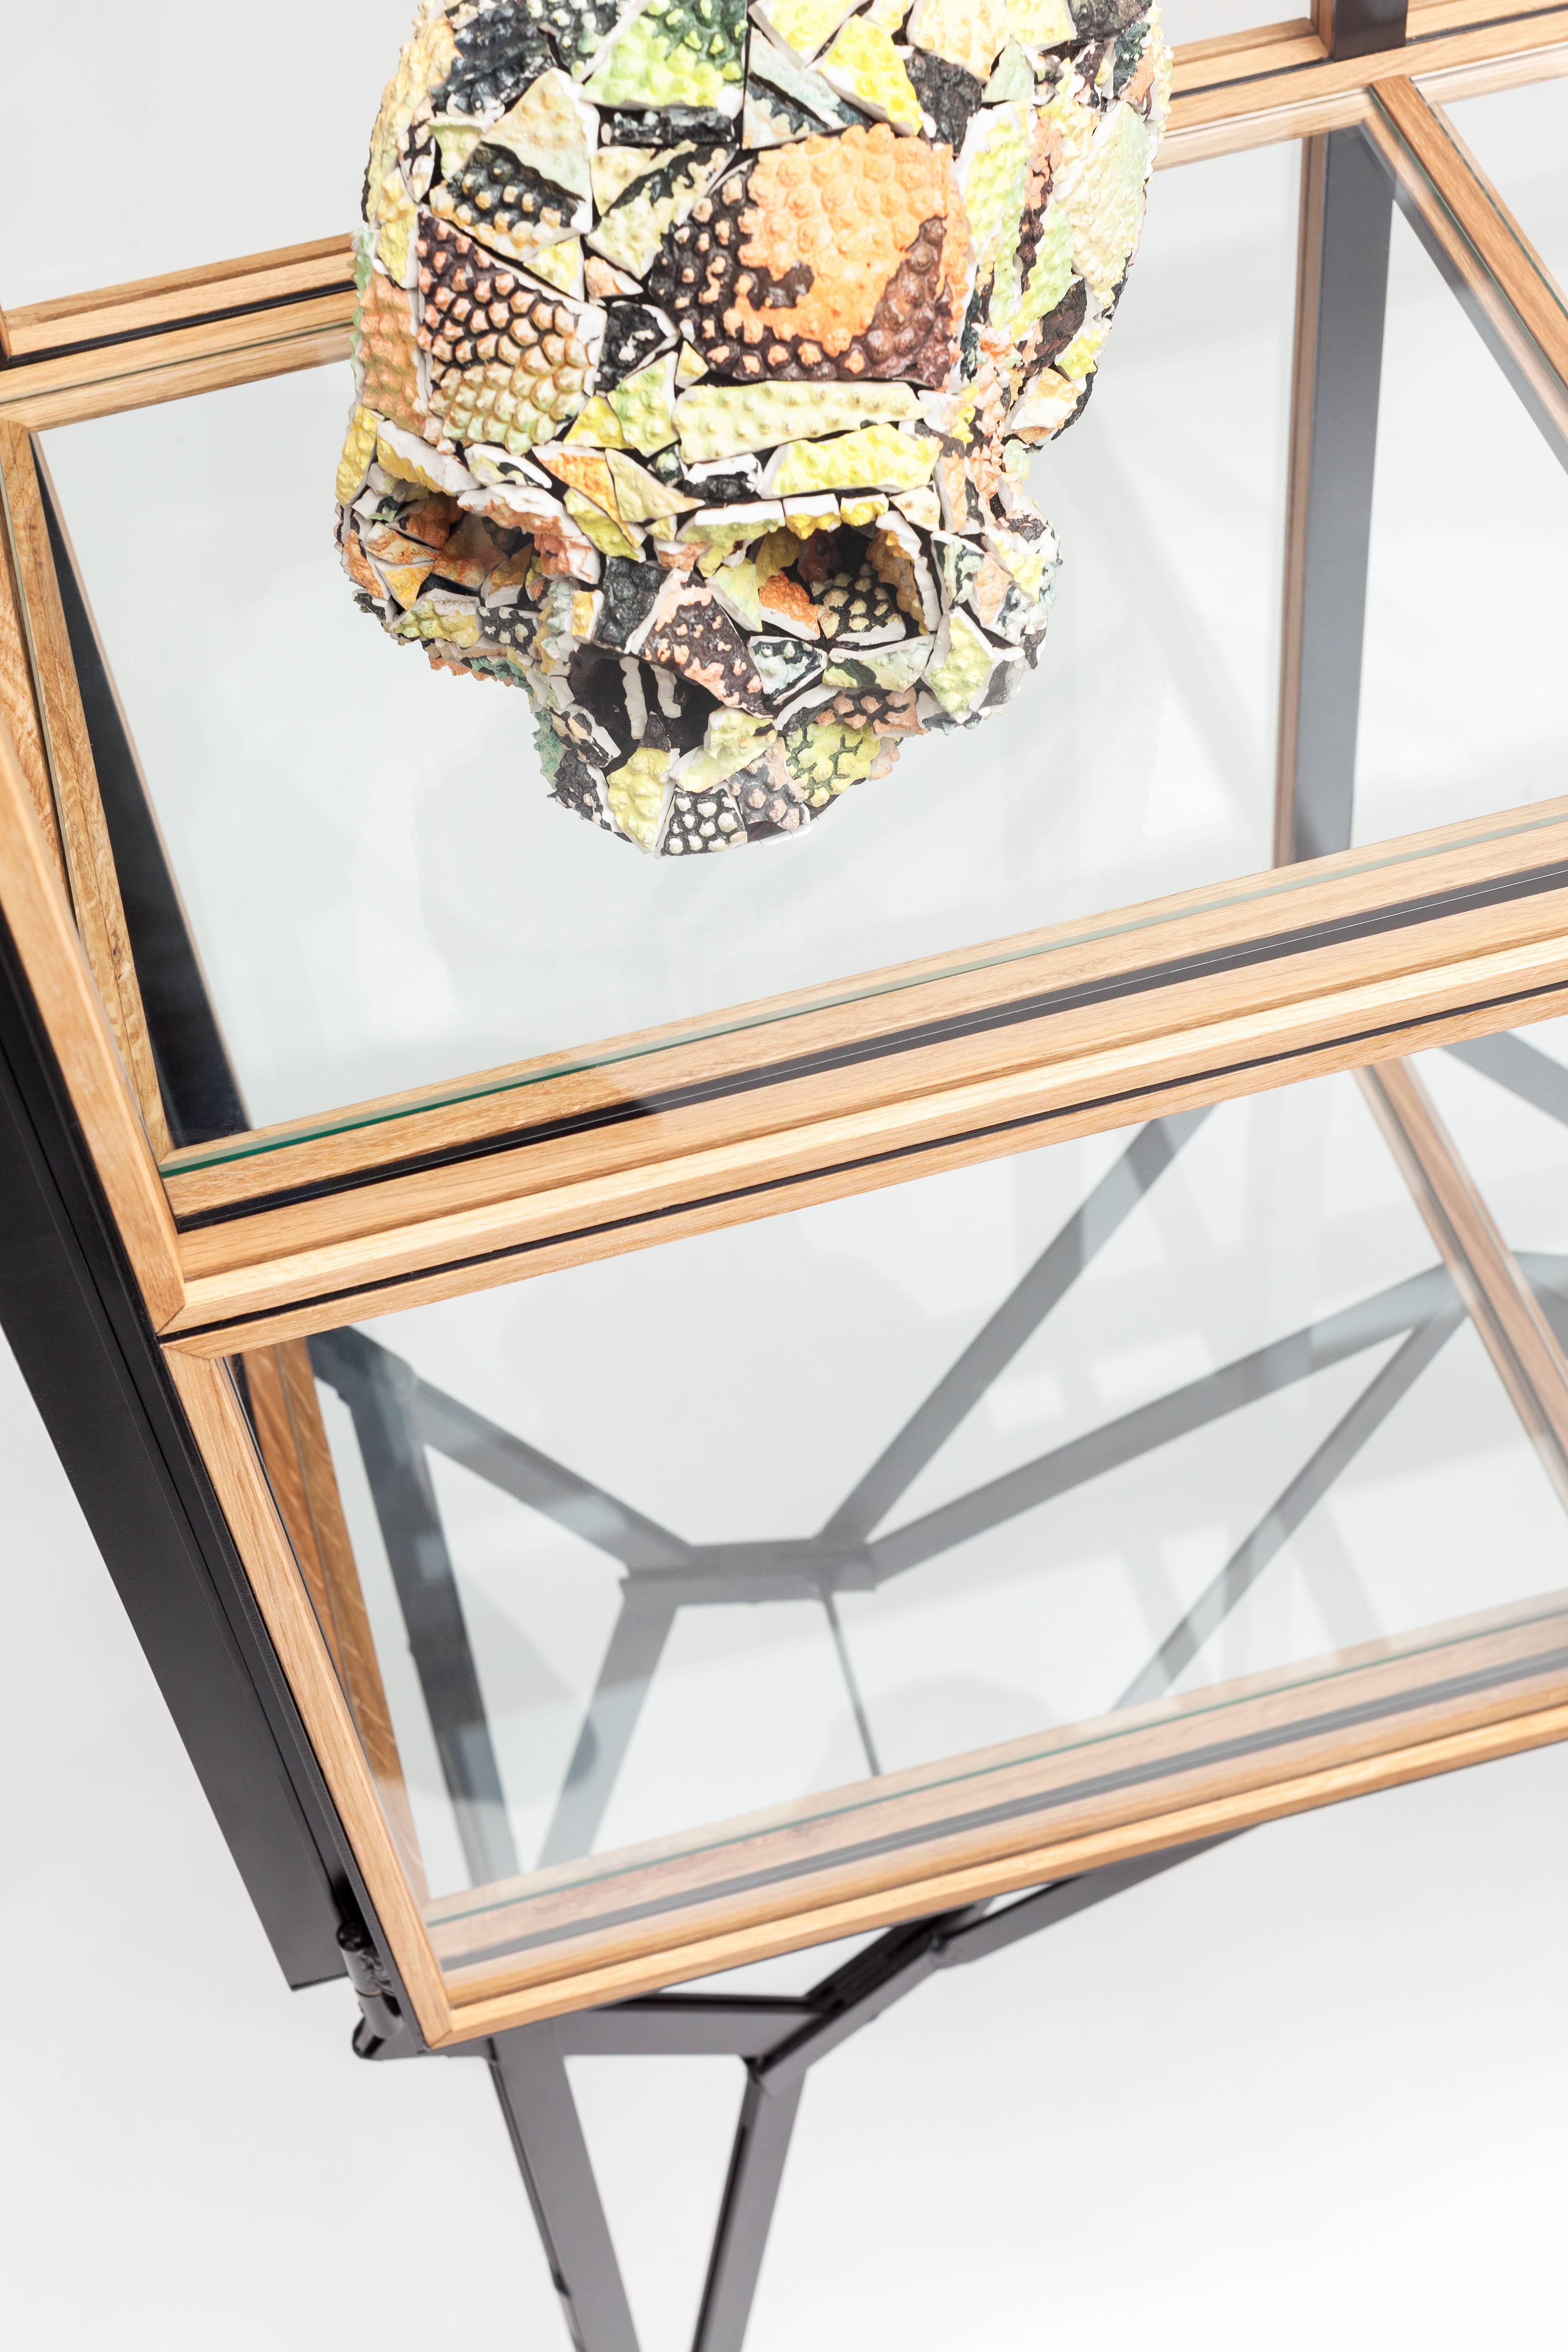 Other Blk Oak Showcase Cabinet by Paul Heijnen, Handmade in Netherlands For Sale